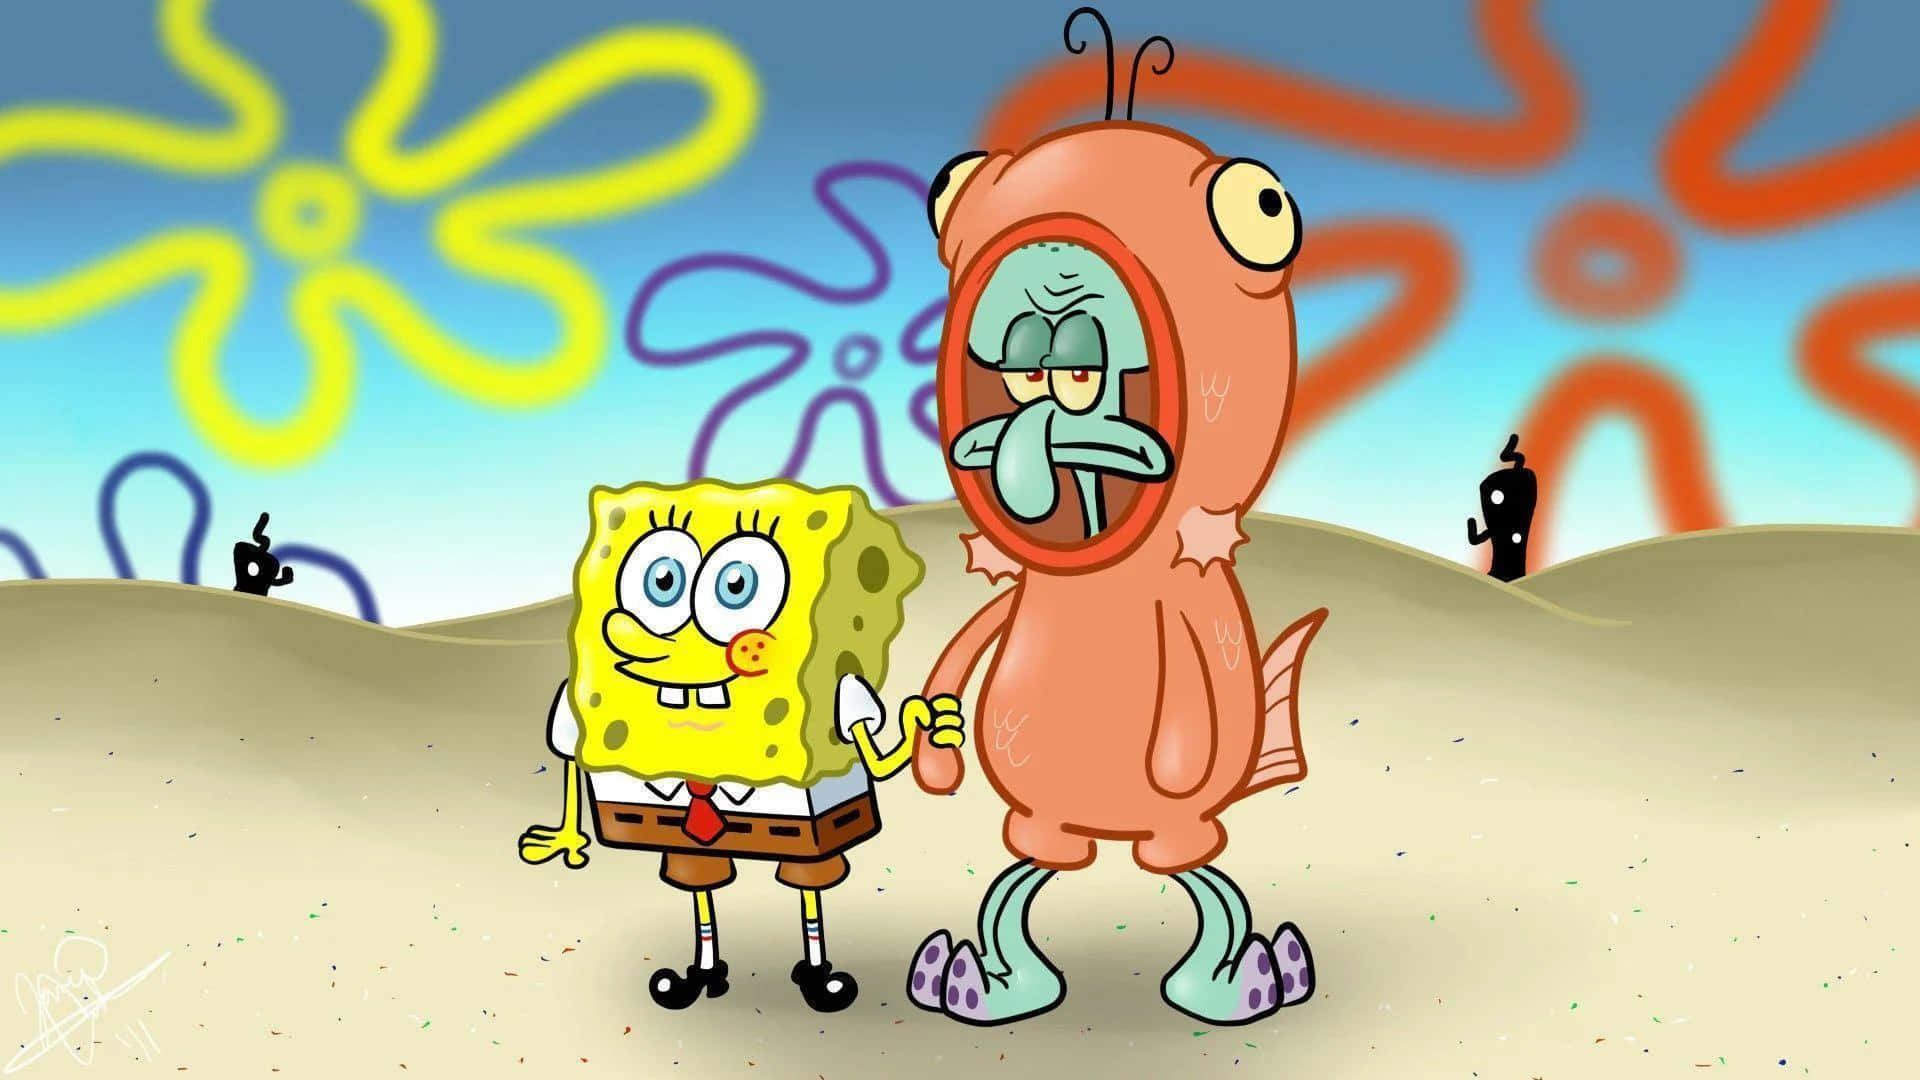 Konstigbild Med Spongebob Och Squidward I Konstiga Kostymer.